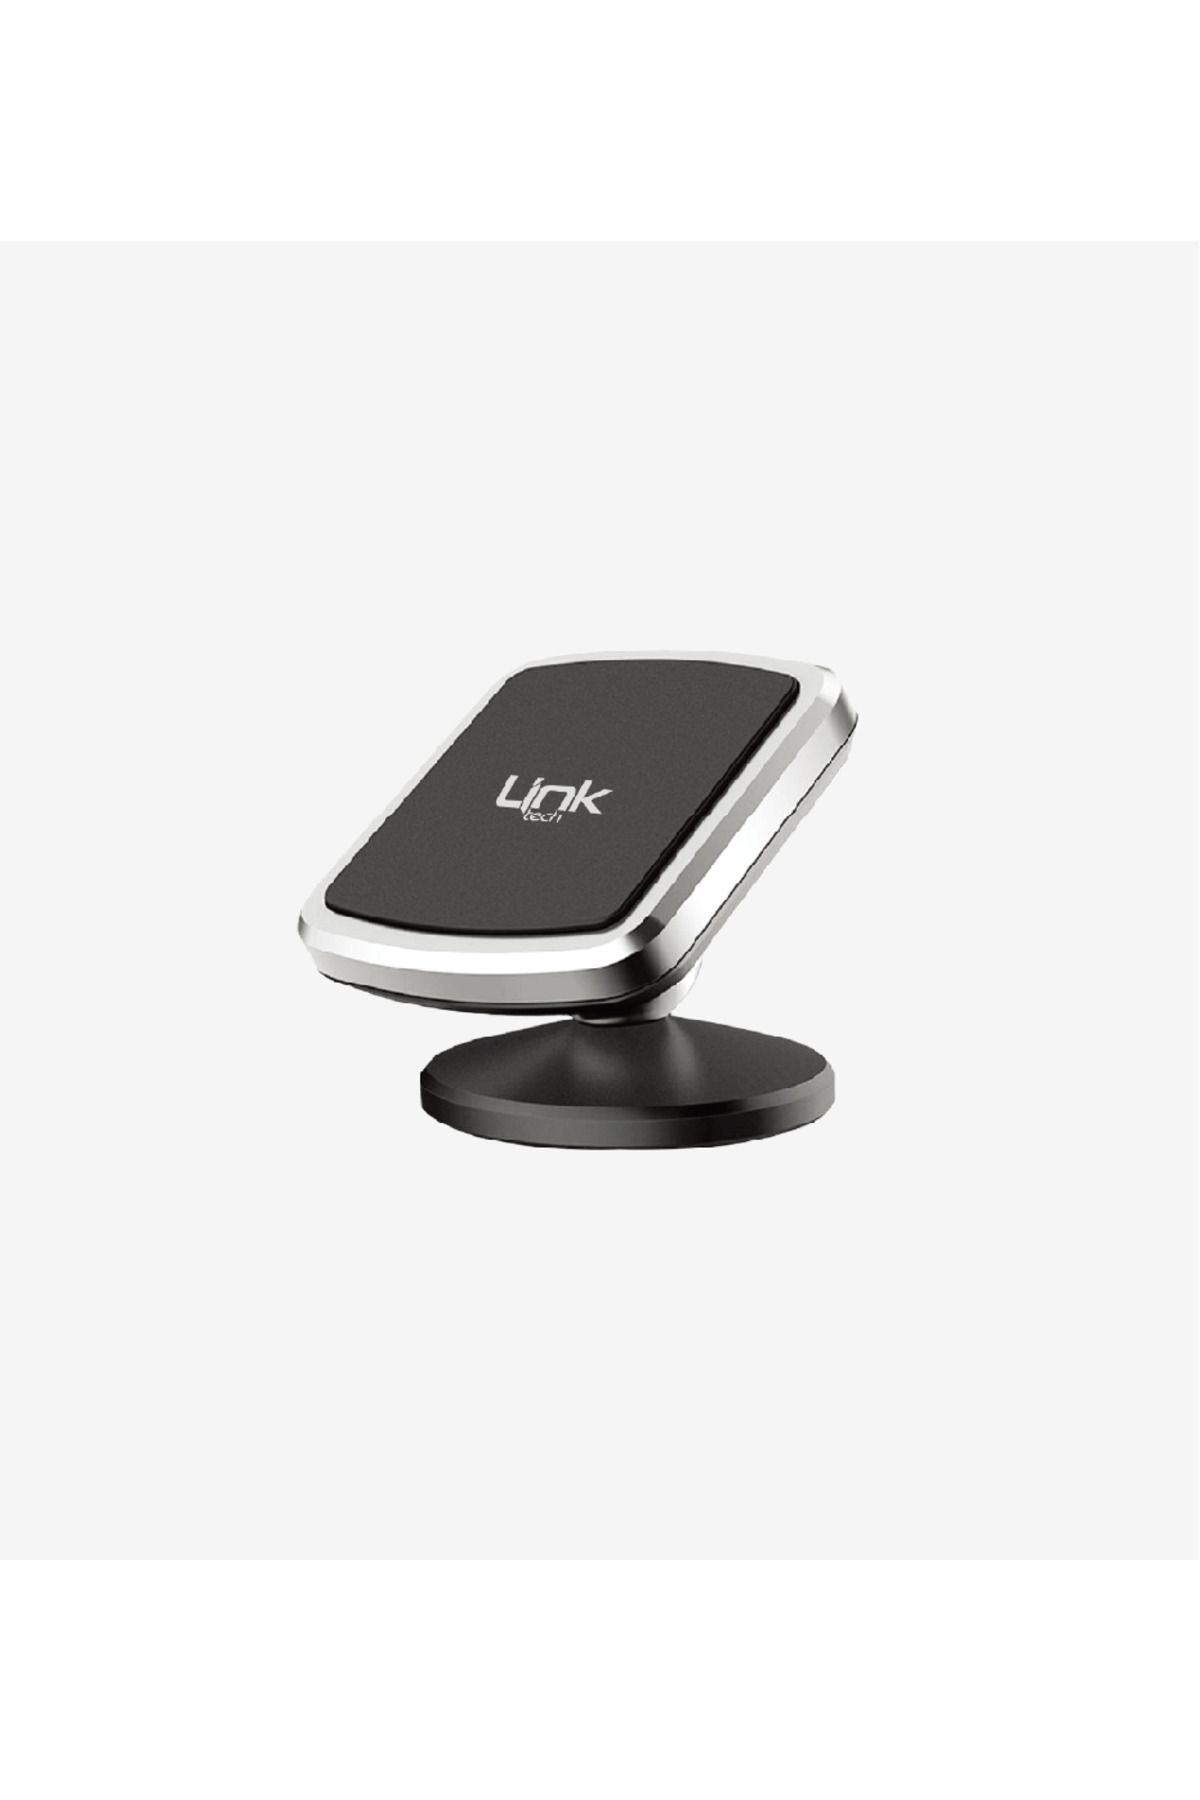 Link H770 Premium Konsola Uyumlu Mıknatıslı Araç İçi Telefon Tutacağı